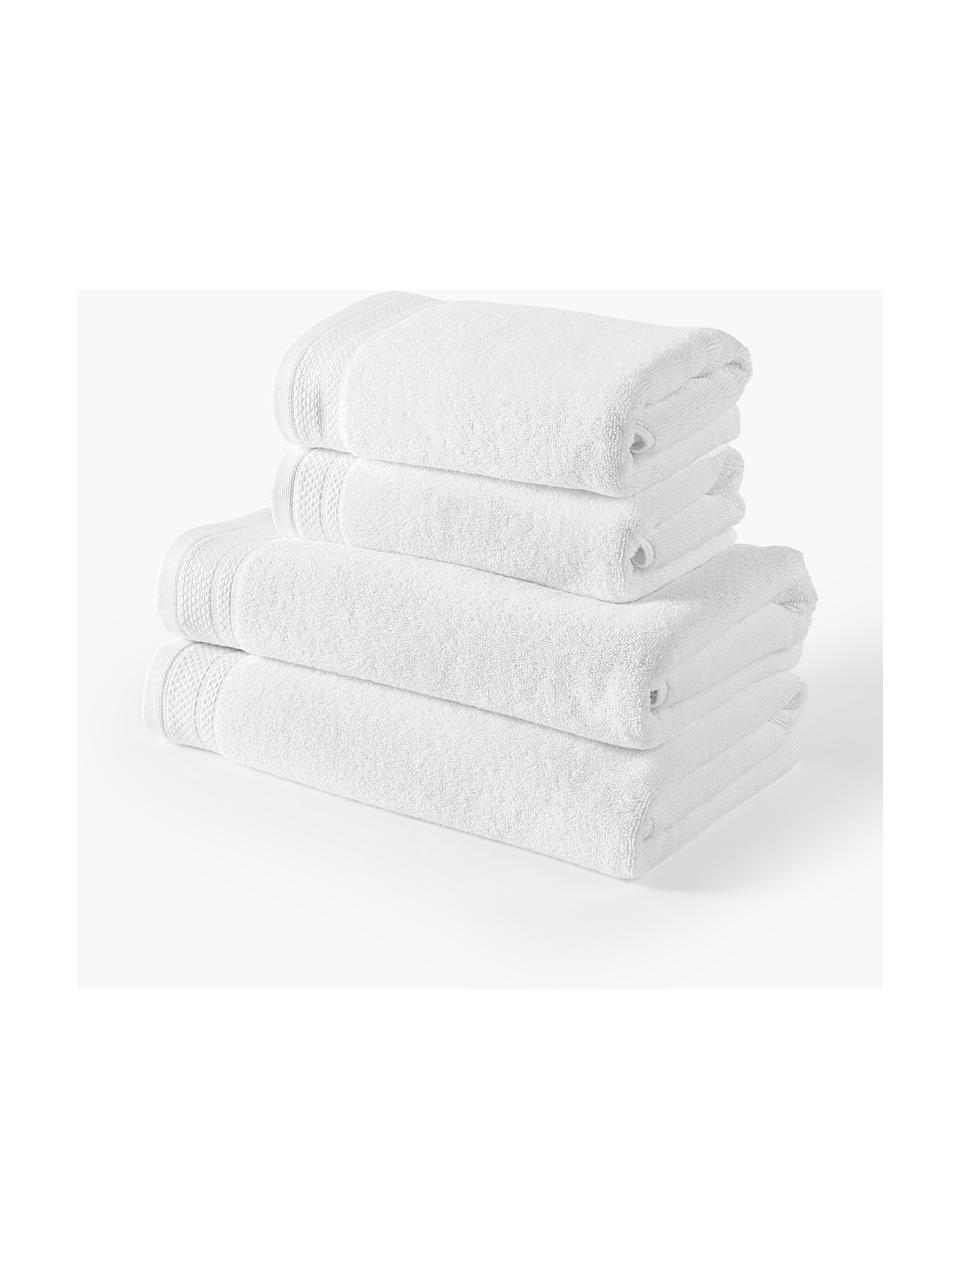 Handtuch-Set Premium aus Bio-Baumwolle, verschiedene Setgrößen, 100 % Bio-Baumwolle, GOTS-zertifiziert (von GCL International, GCL-300517)
Schwere Qualität, 600 g/m², Weiß, 4er-Set (Handtuch & Duschtuch)